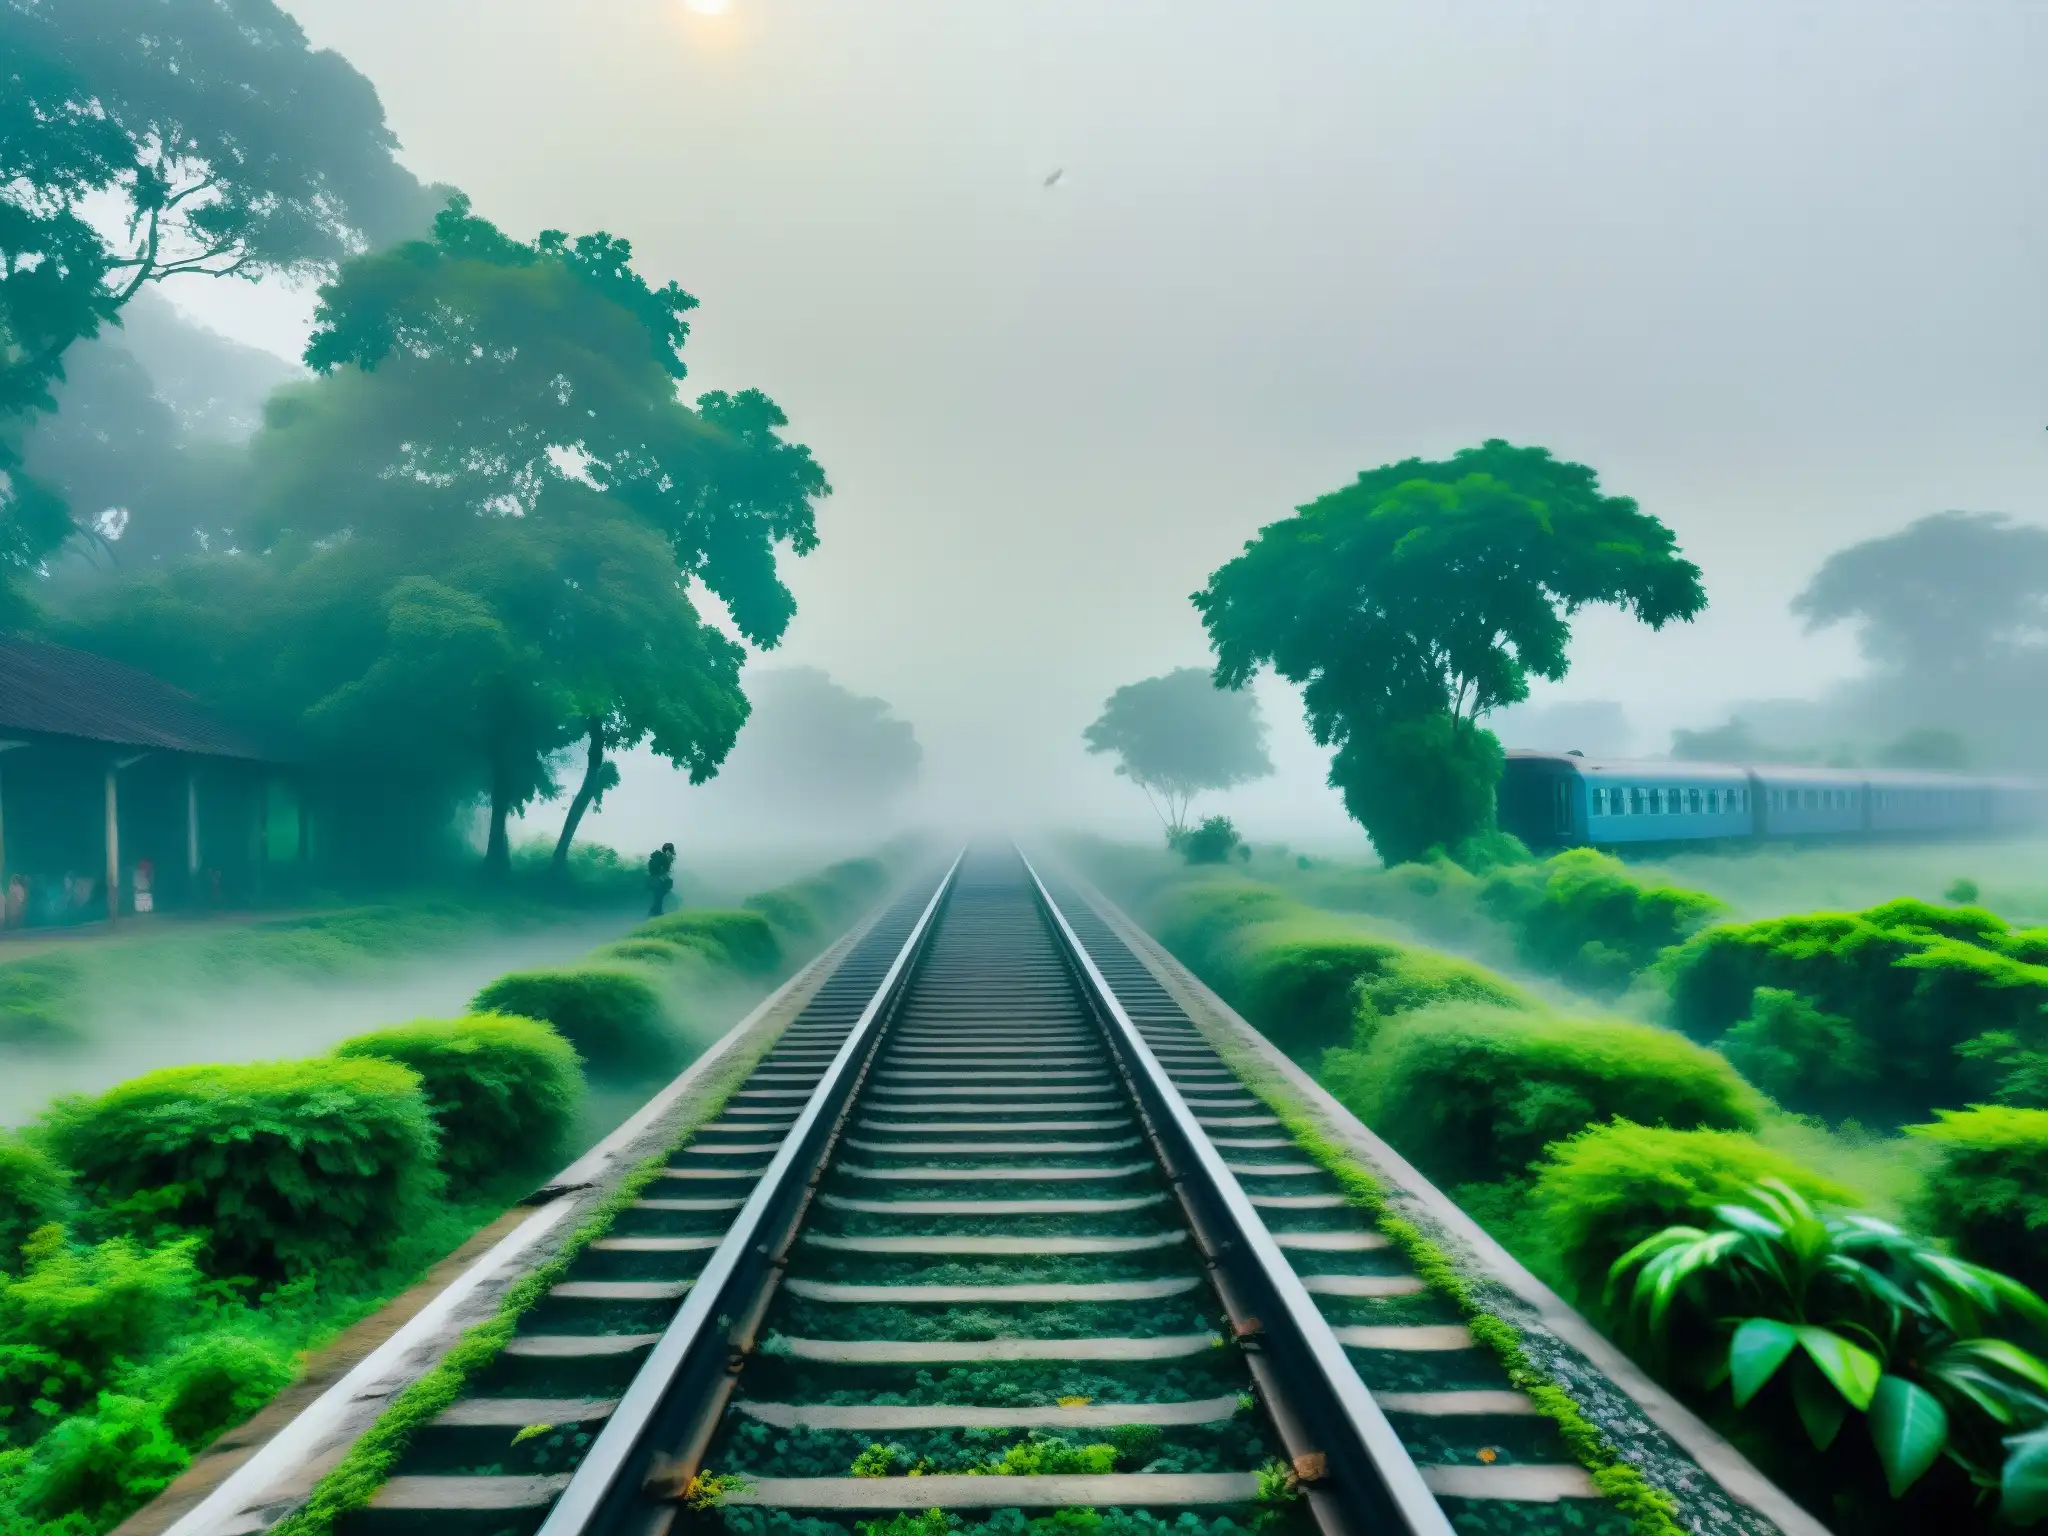 Un antiguo y abandonado tren en una vía rodeada de niebla en Bangladesh, evocando el misterioso fantasma del tren en Bangladesh